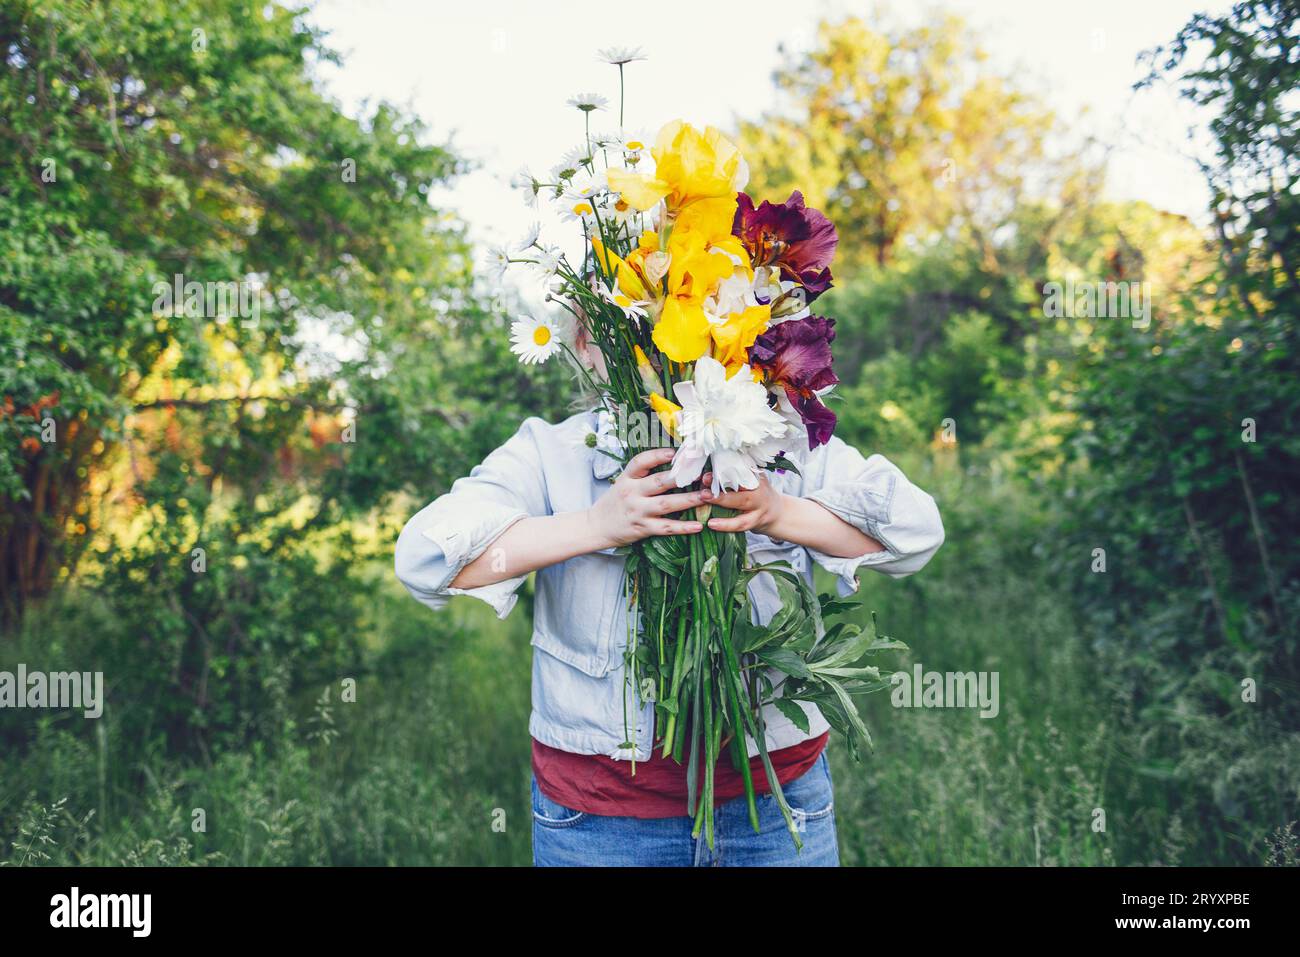 Eine junge Frau bedeckte ihr Gesicht mit einem großen Blumenstrauß. Stockfoto